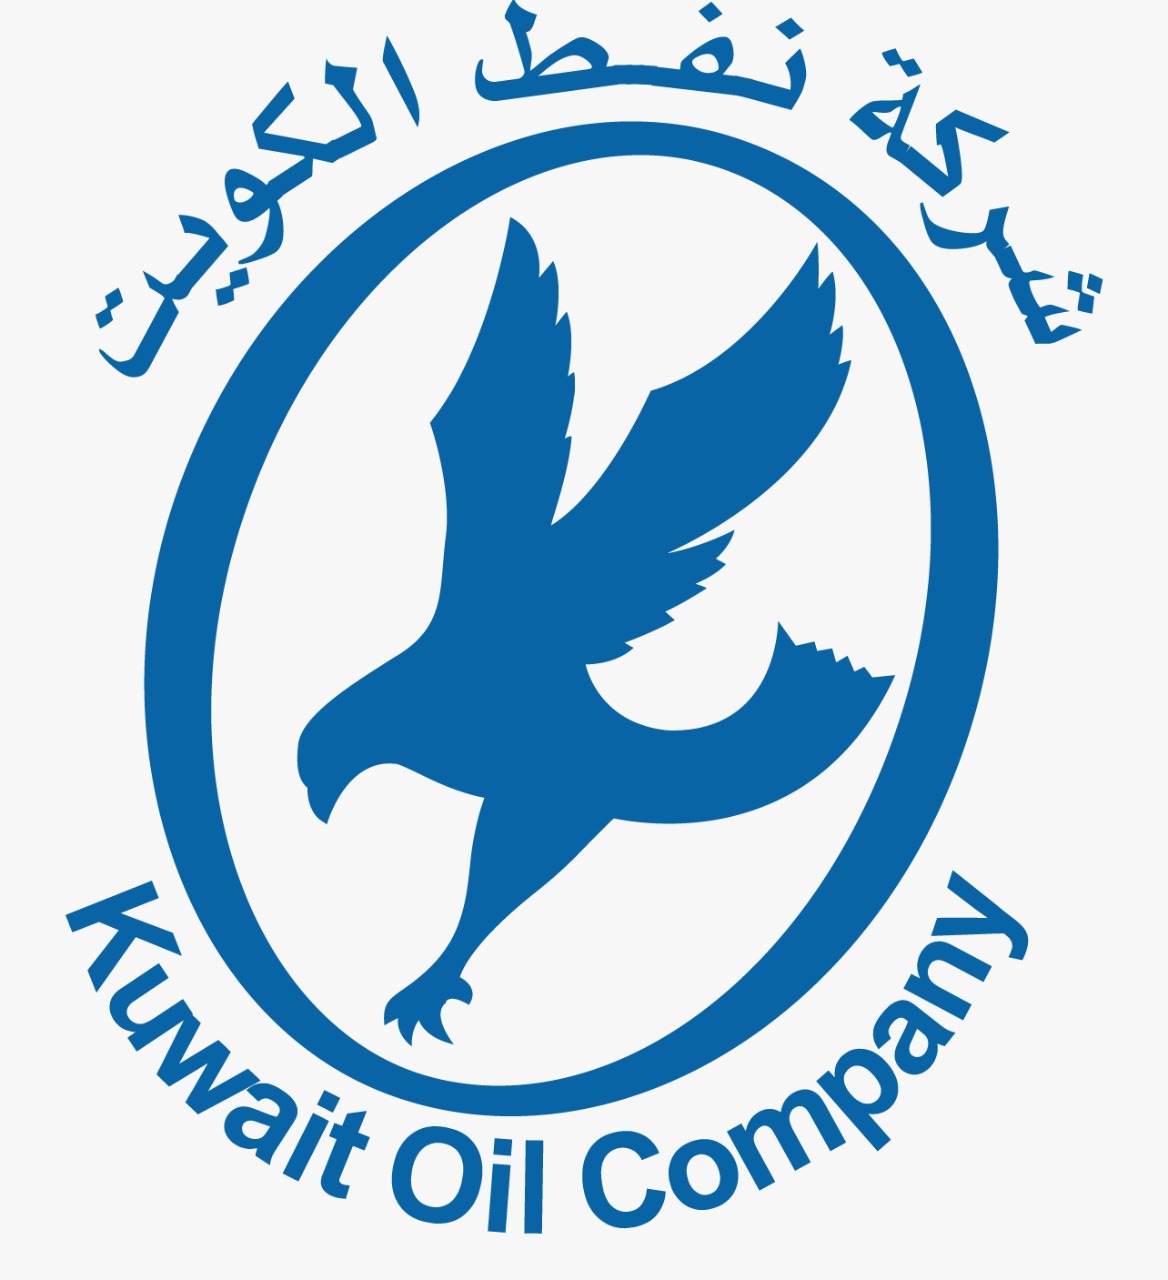 НИПТ на онлайн-сессии по порталу "eBusiness" Kuwait Oil Company